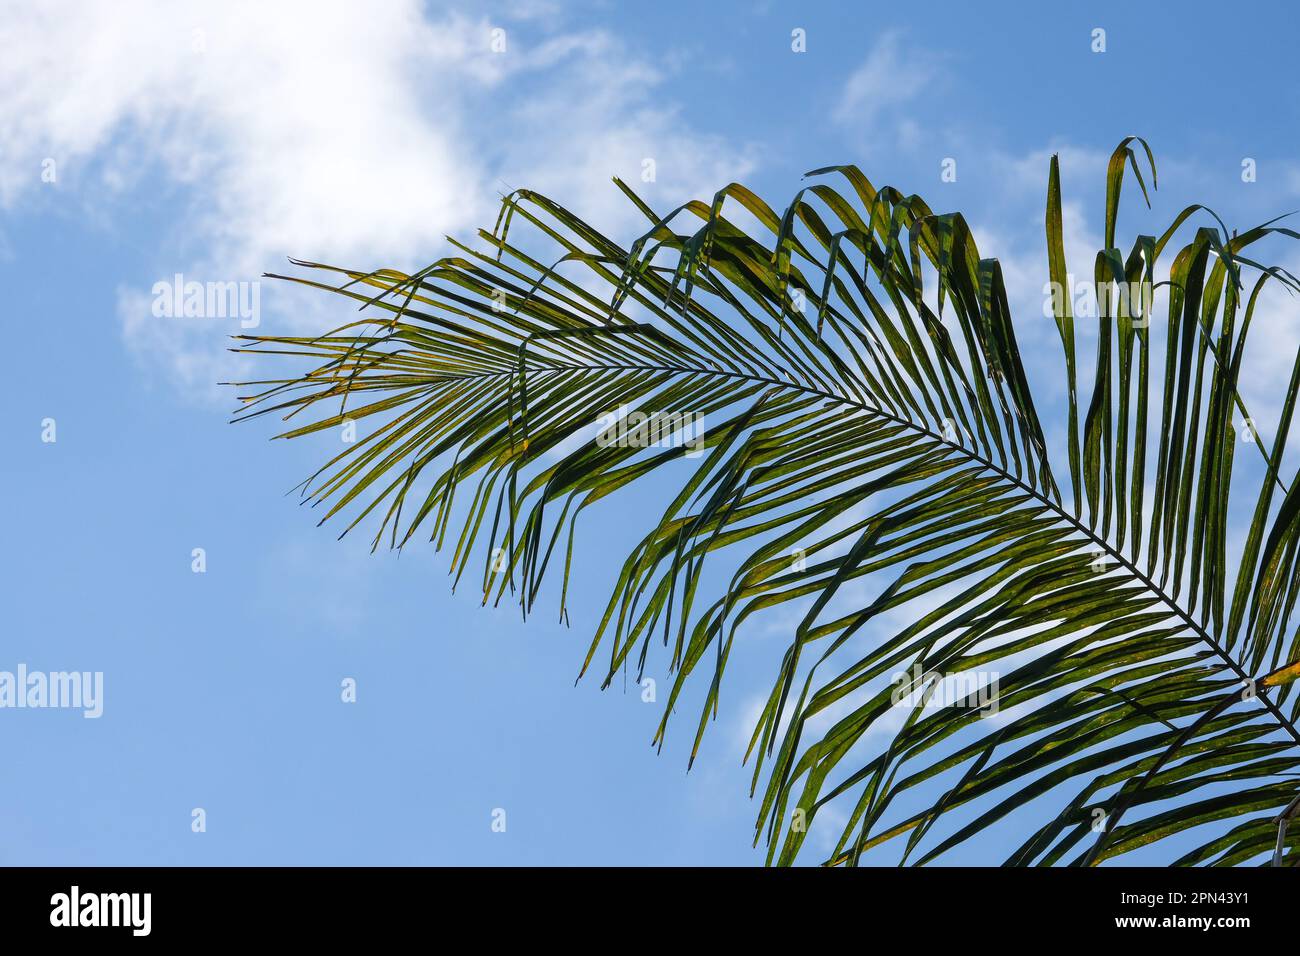 Basso angolo sparato arecaceae foglie di palma con sfondo cielo nuvoloso. Fuoco selettivo delle foglie dell'albero. Area open space. Foto Stock